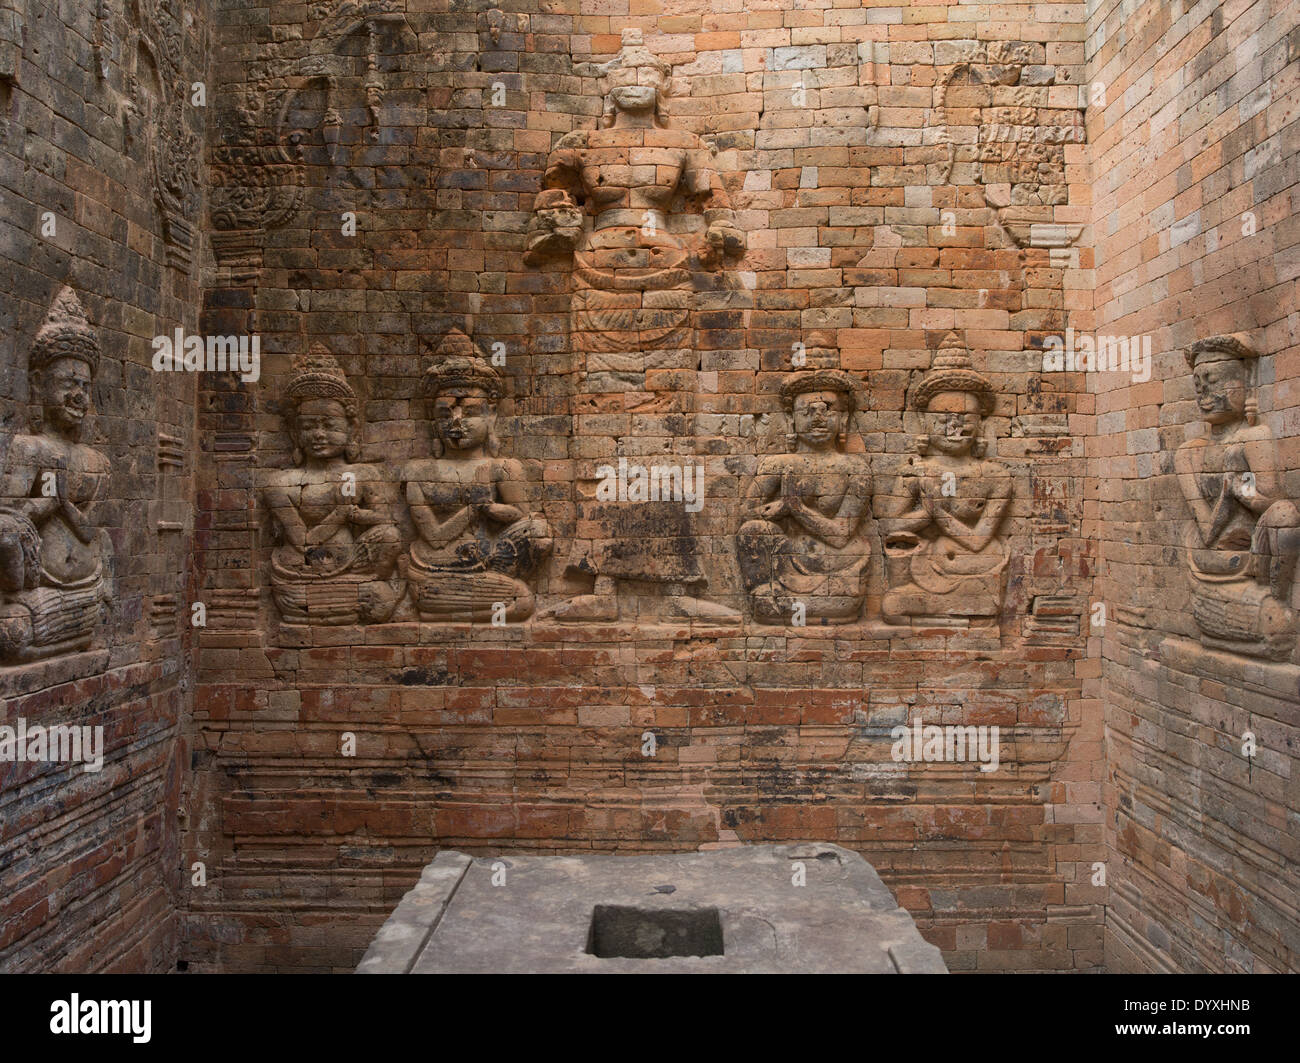 Prasat Kravan un temple hindou construit de brique. Siem Reap, Cambodge Banque D'Images